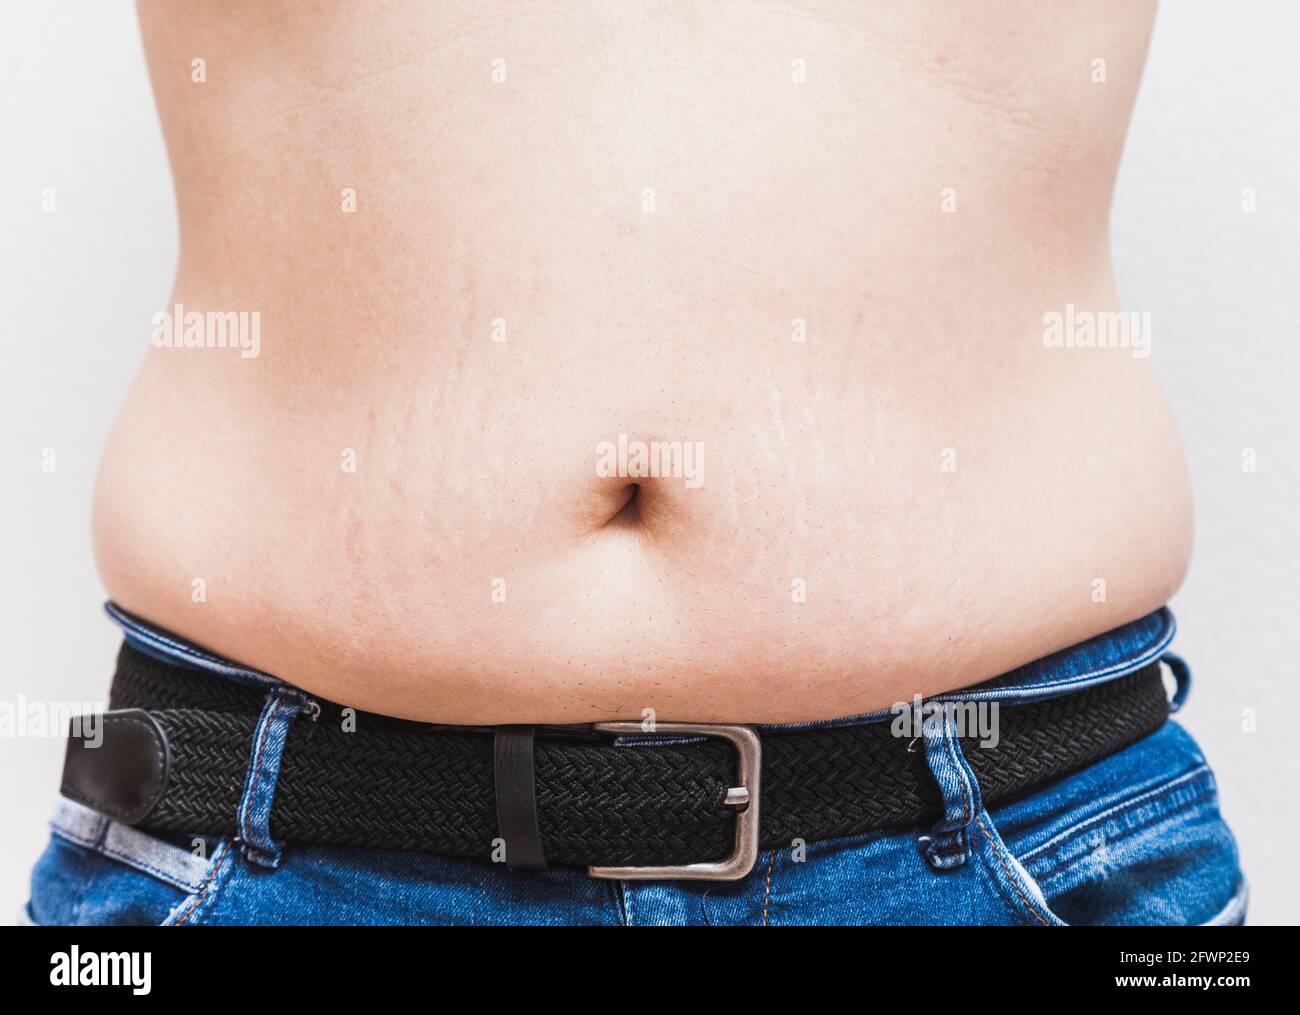 Il ventre e l'ombelico di un uomo grasso irriconoscibile che indossa jeans blu e una cintura nera Foto Stock